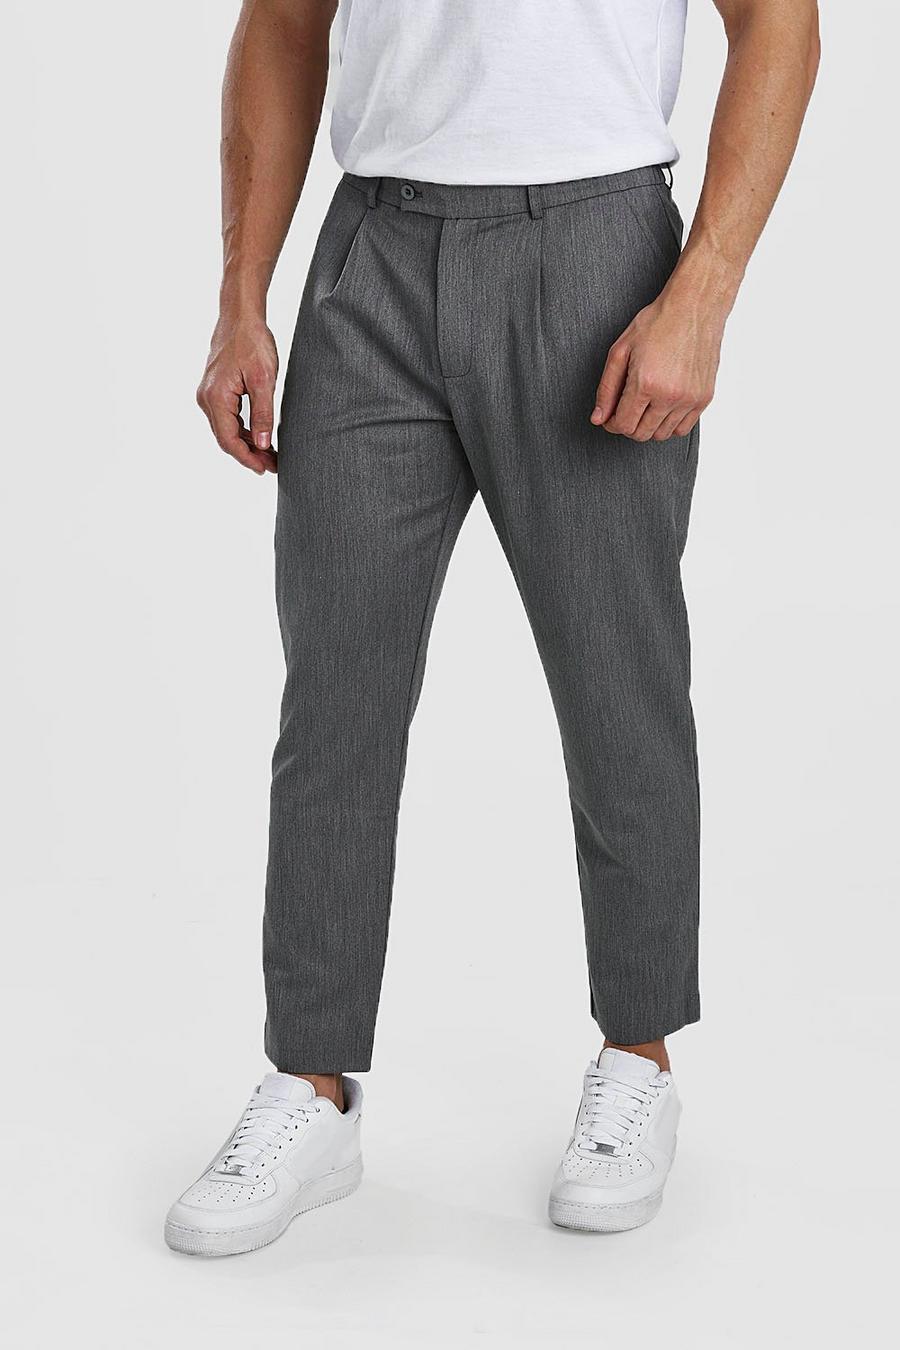 Pantalones cortos ajustados casuales con pliegues image number 1